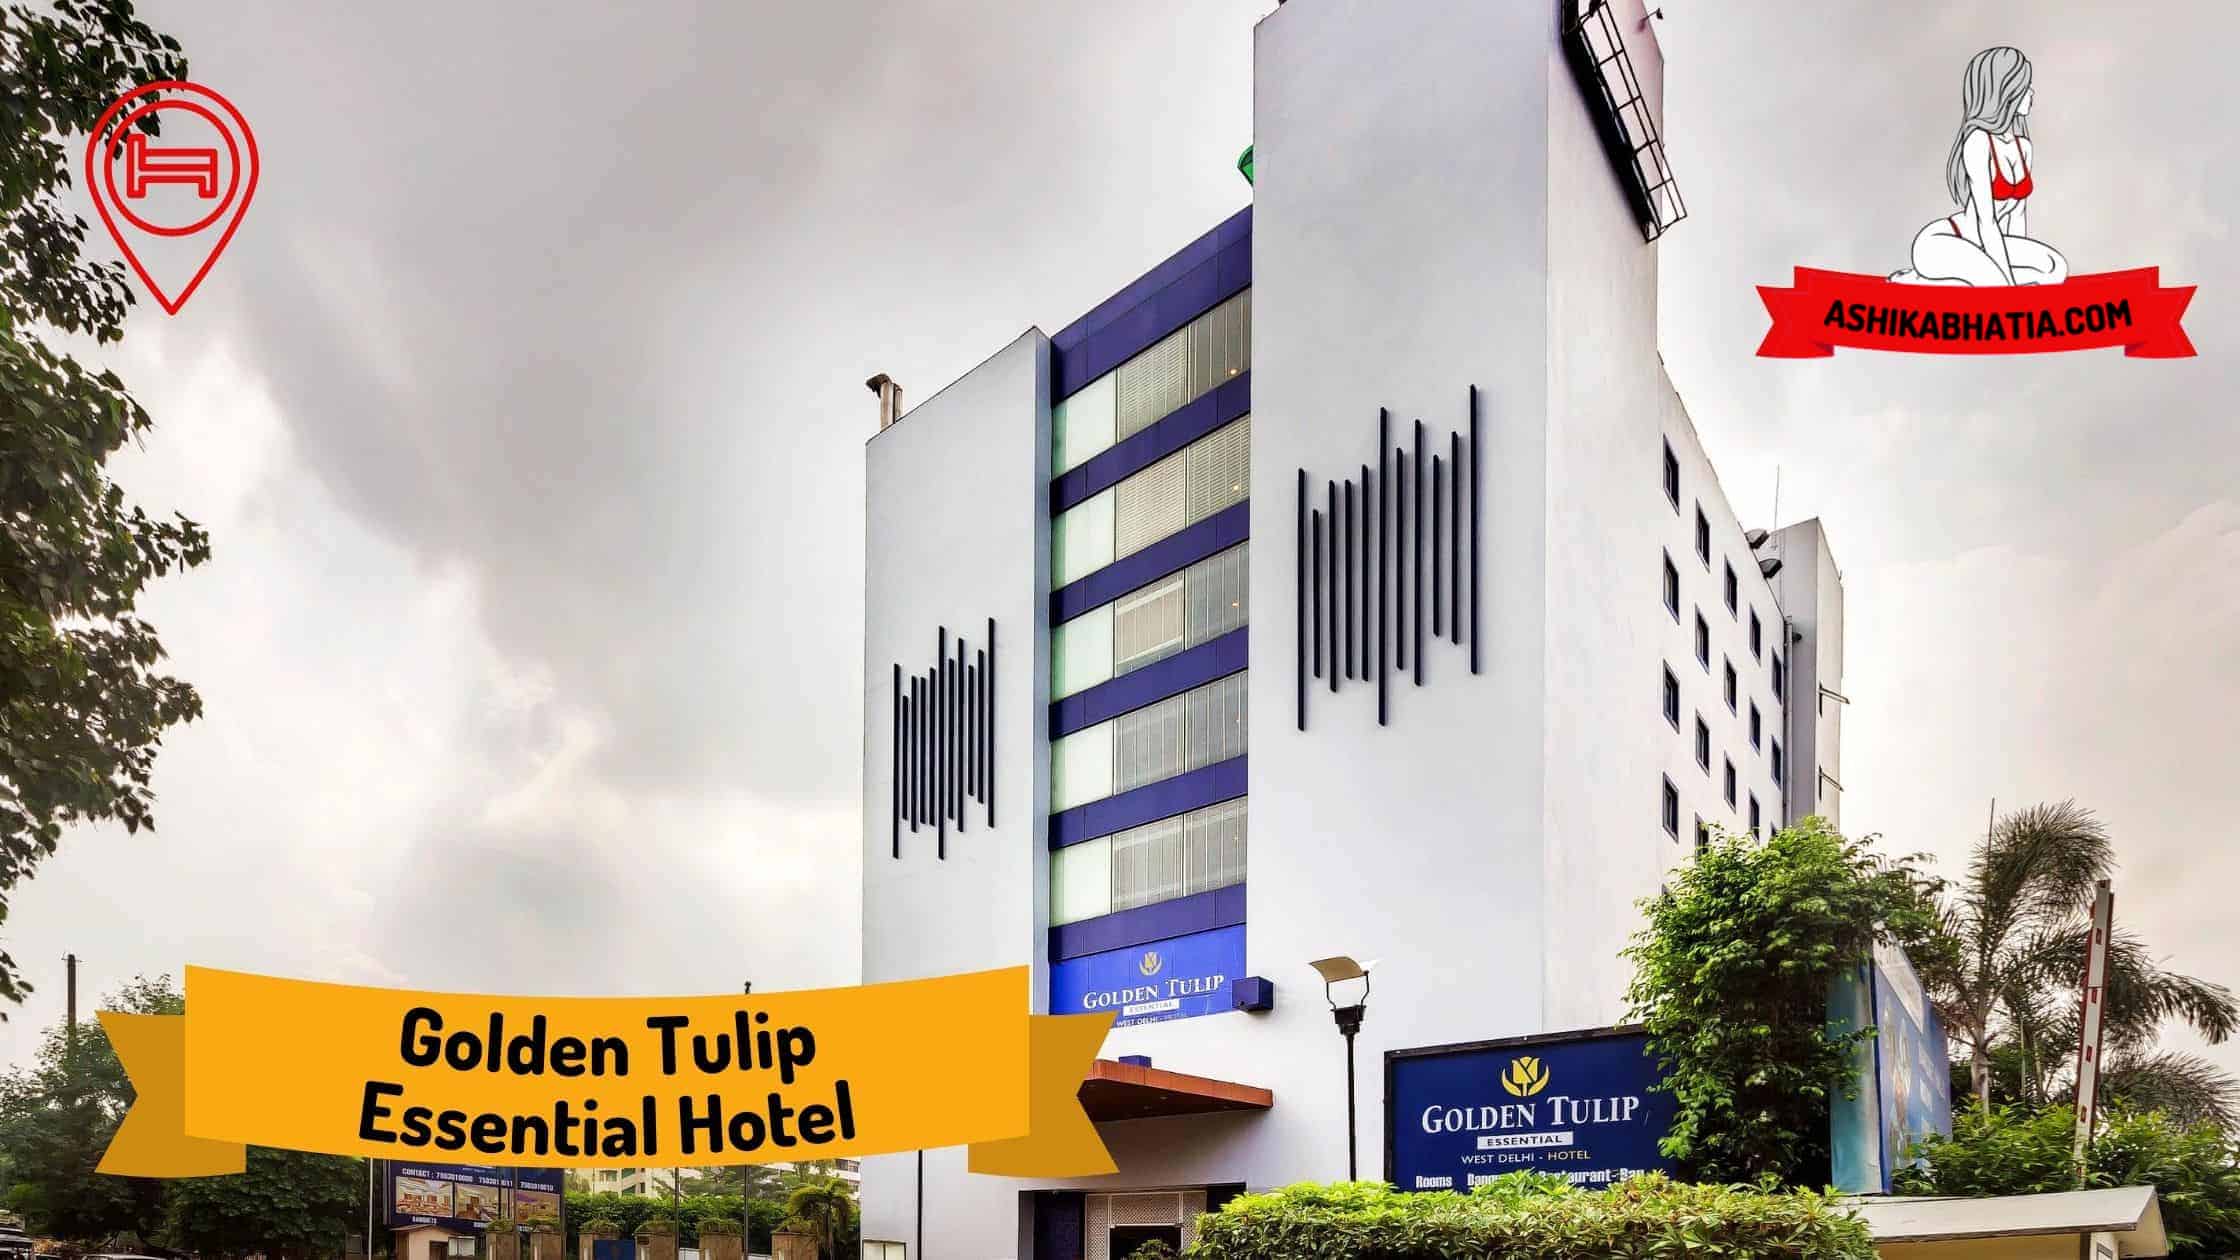 Golden Tulip Essential Hotel Escorts